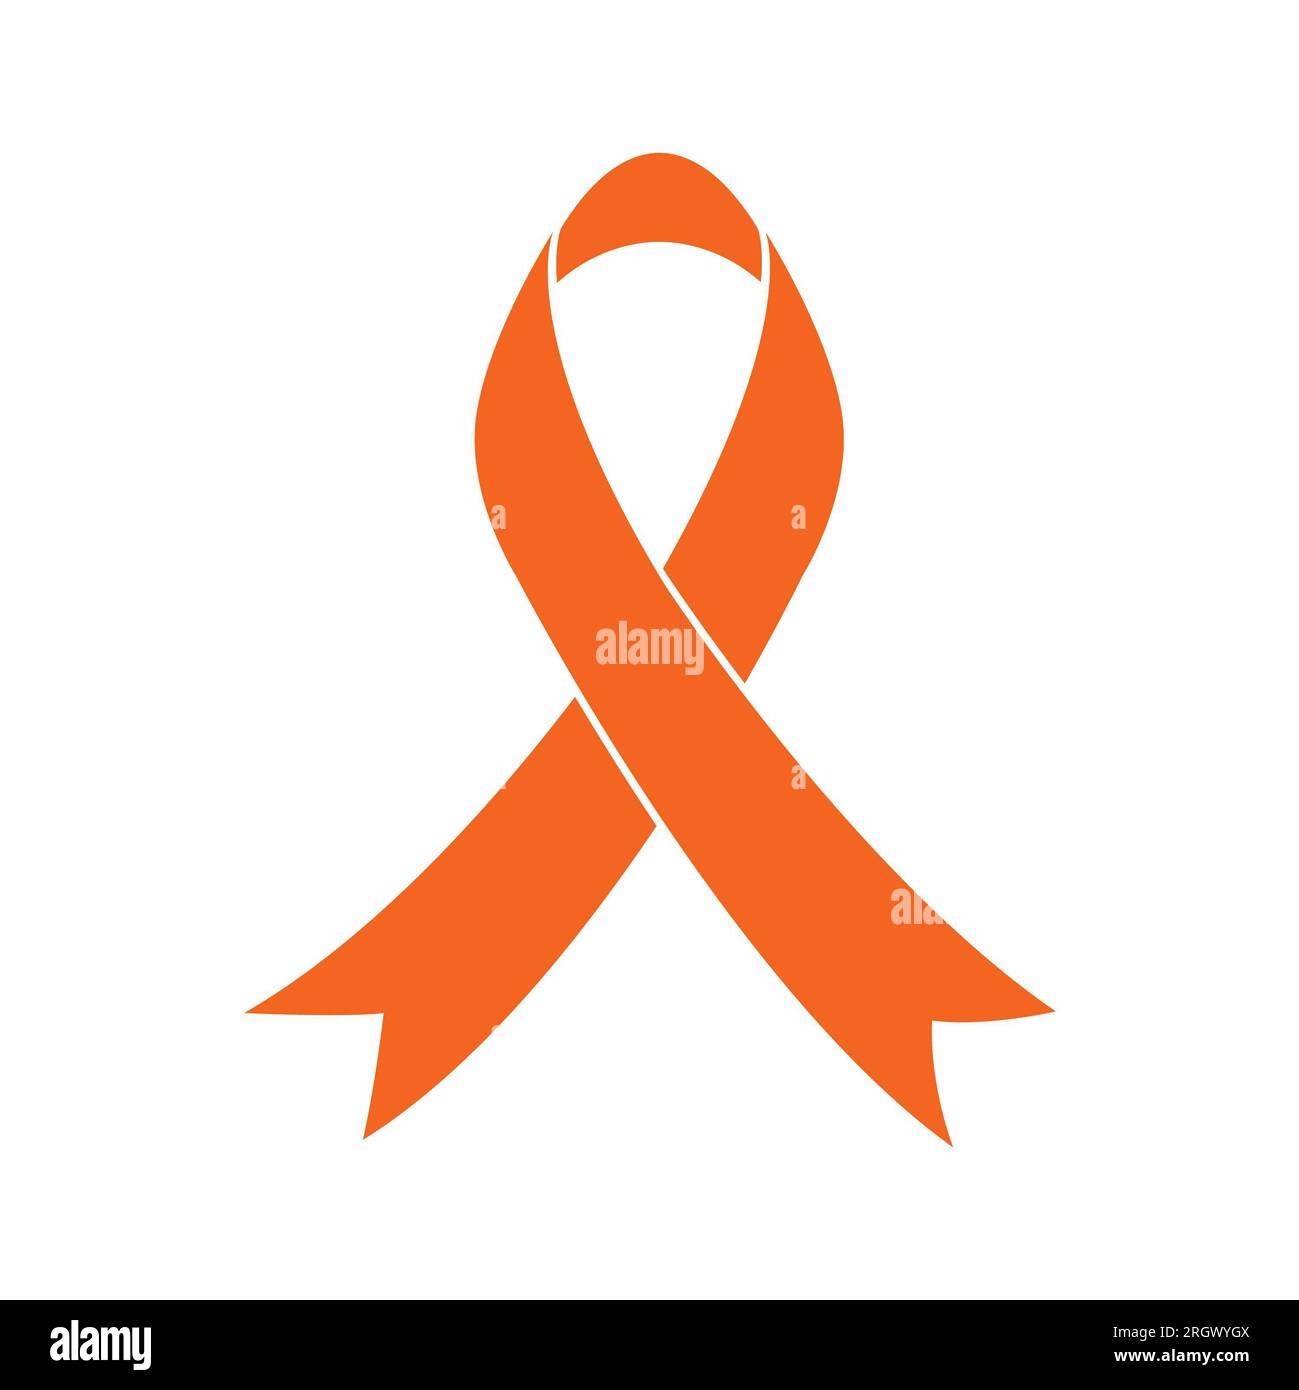 Orange Ribbon of Leukemia Cancer on white background. Isolated illustration. Stock Photo